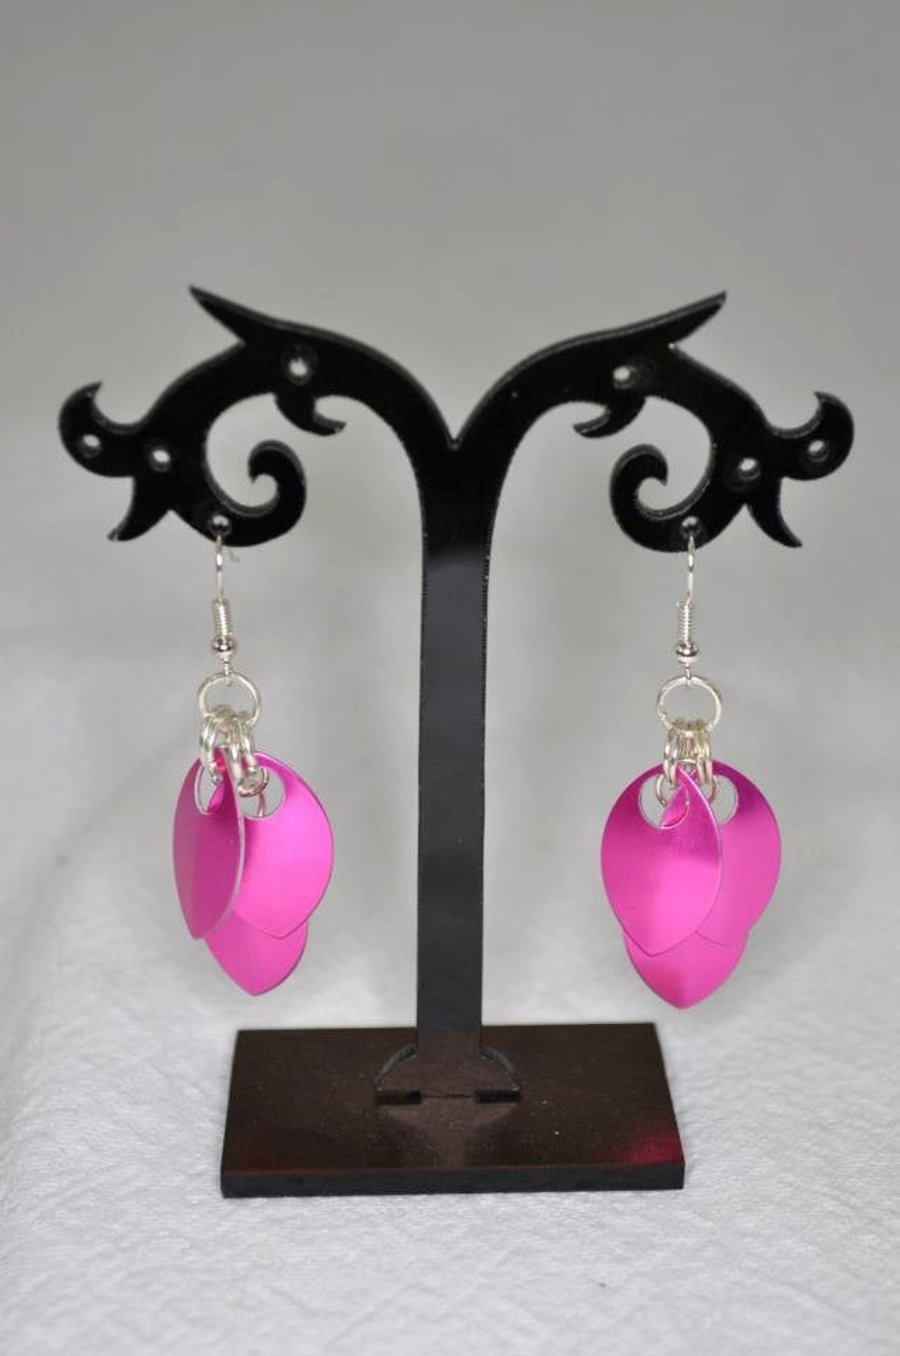 Hot Pink Drop Earrings, Scale Maille Earrings, Pink Dangle Earrings